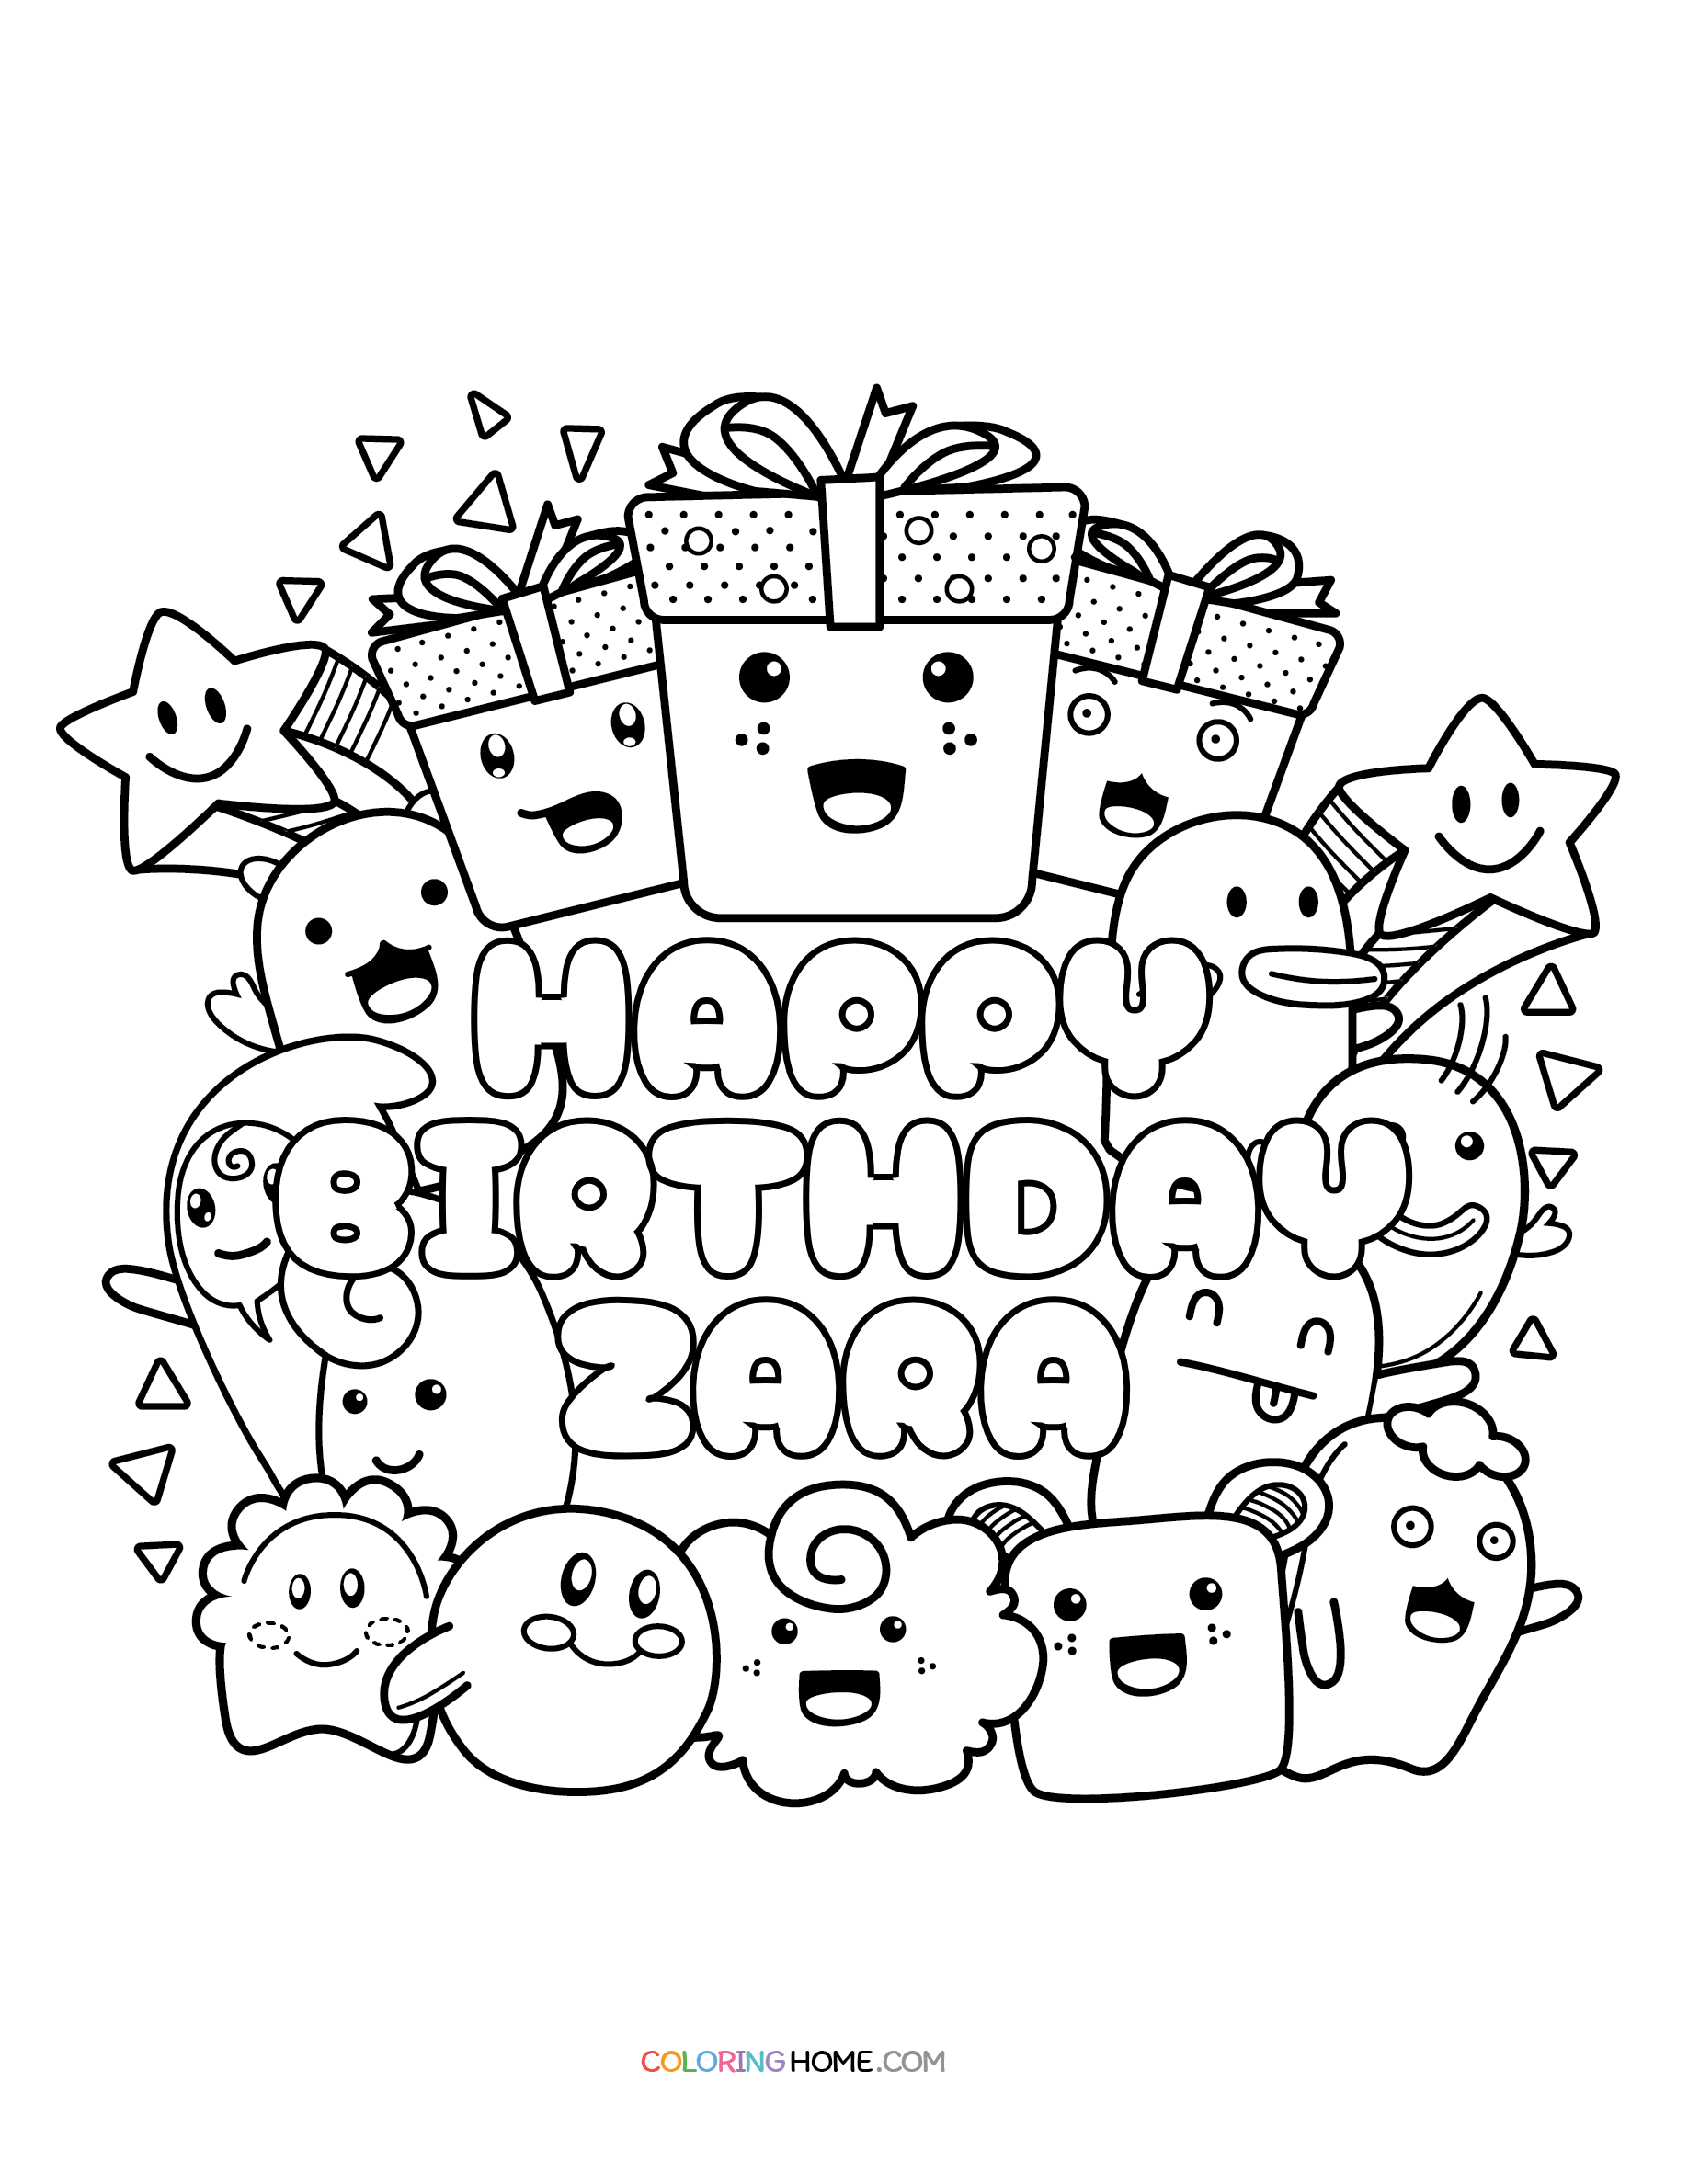 Happy Birthday Zara coloring page